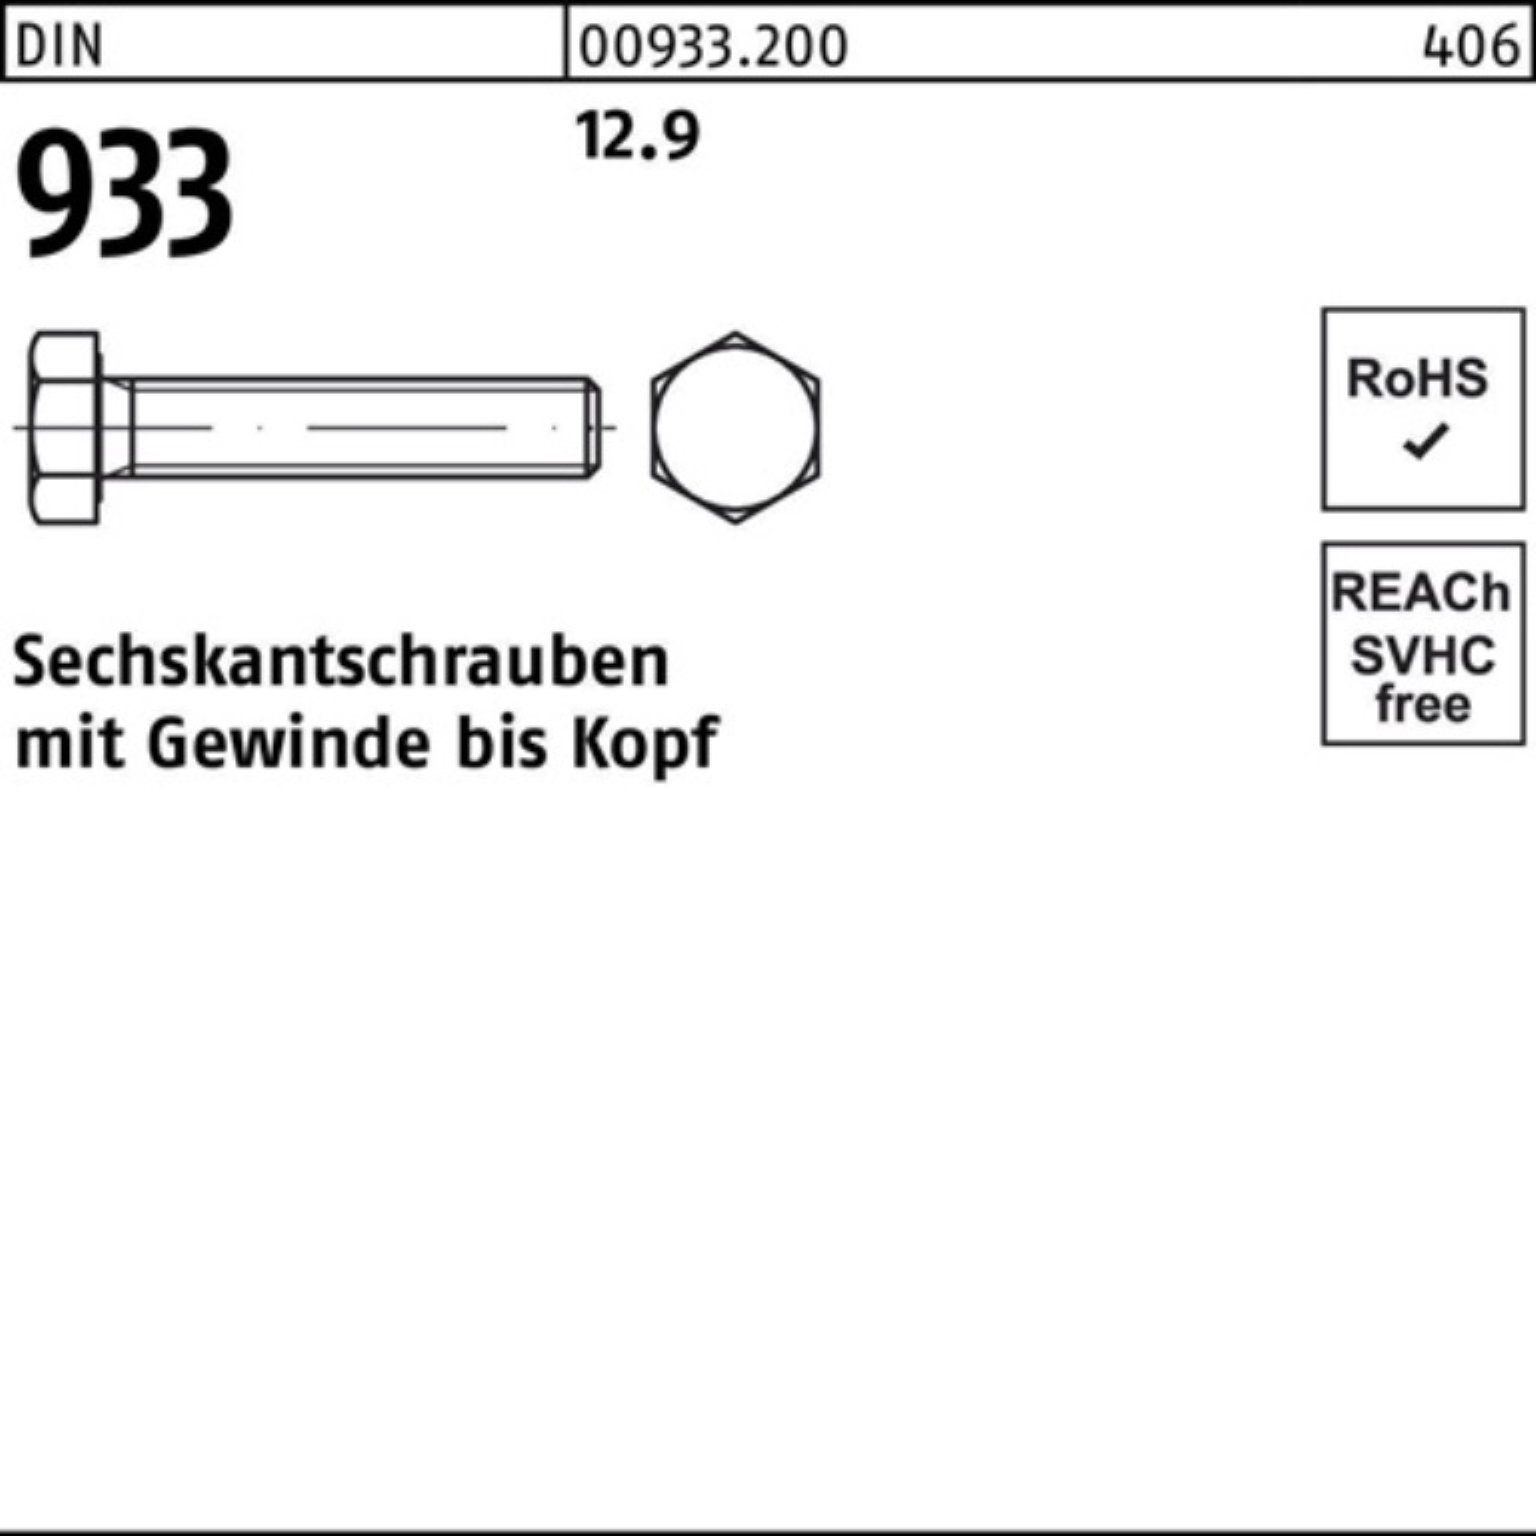 【ausverkauft】 Reyher Sechskantschraube 500er 933 Stück Pack 30 Sechskantschraube 933 M6x 500 12.9 DIN VG DIN